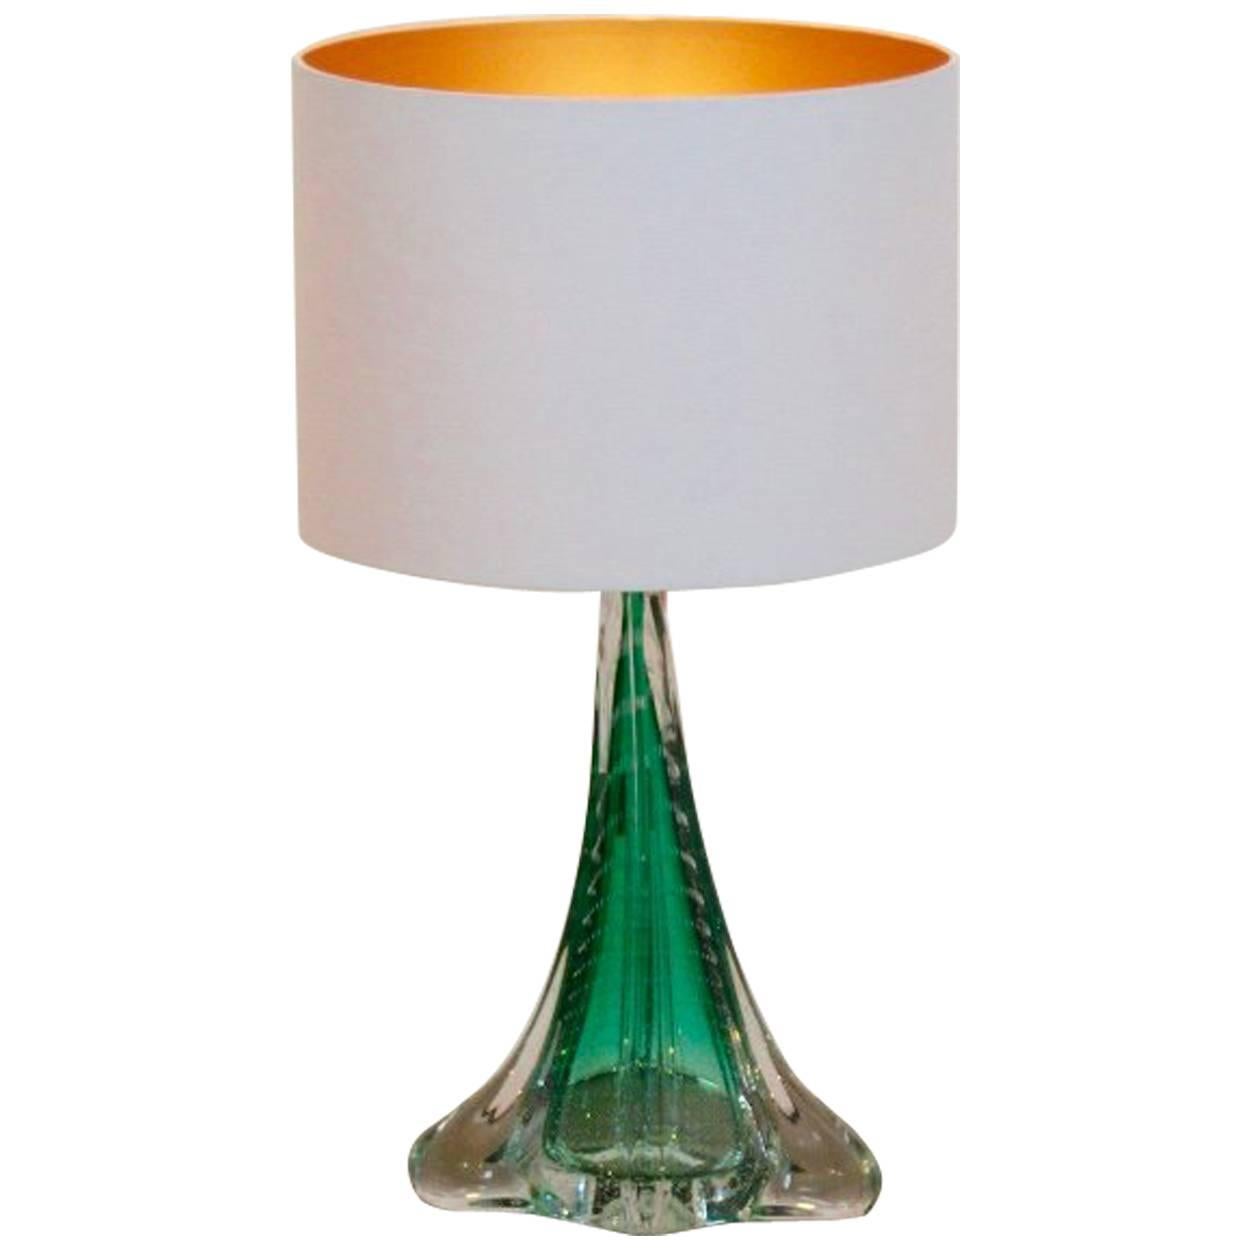 Unique Handmade Boussu Translucent Glass Table Lamp, Belgium, 1960s